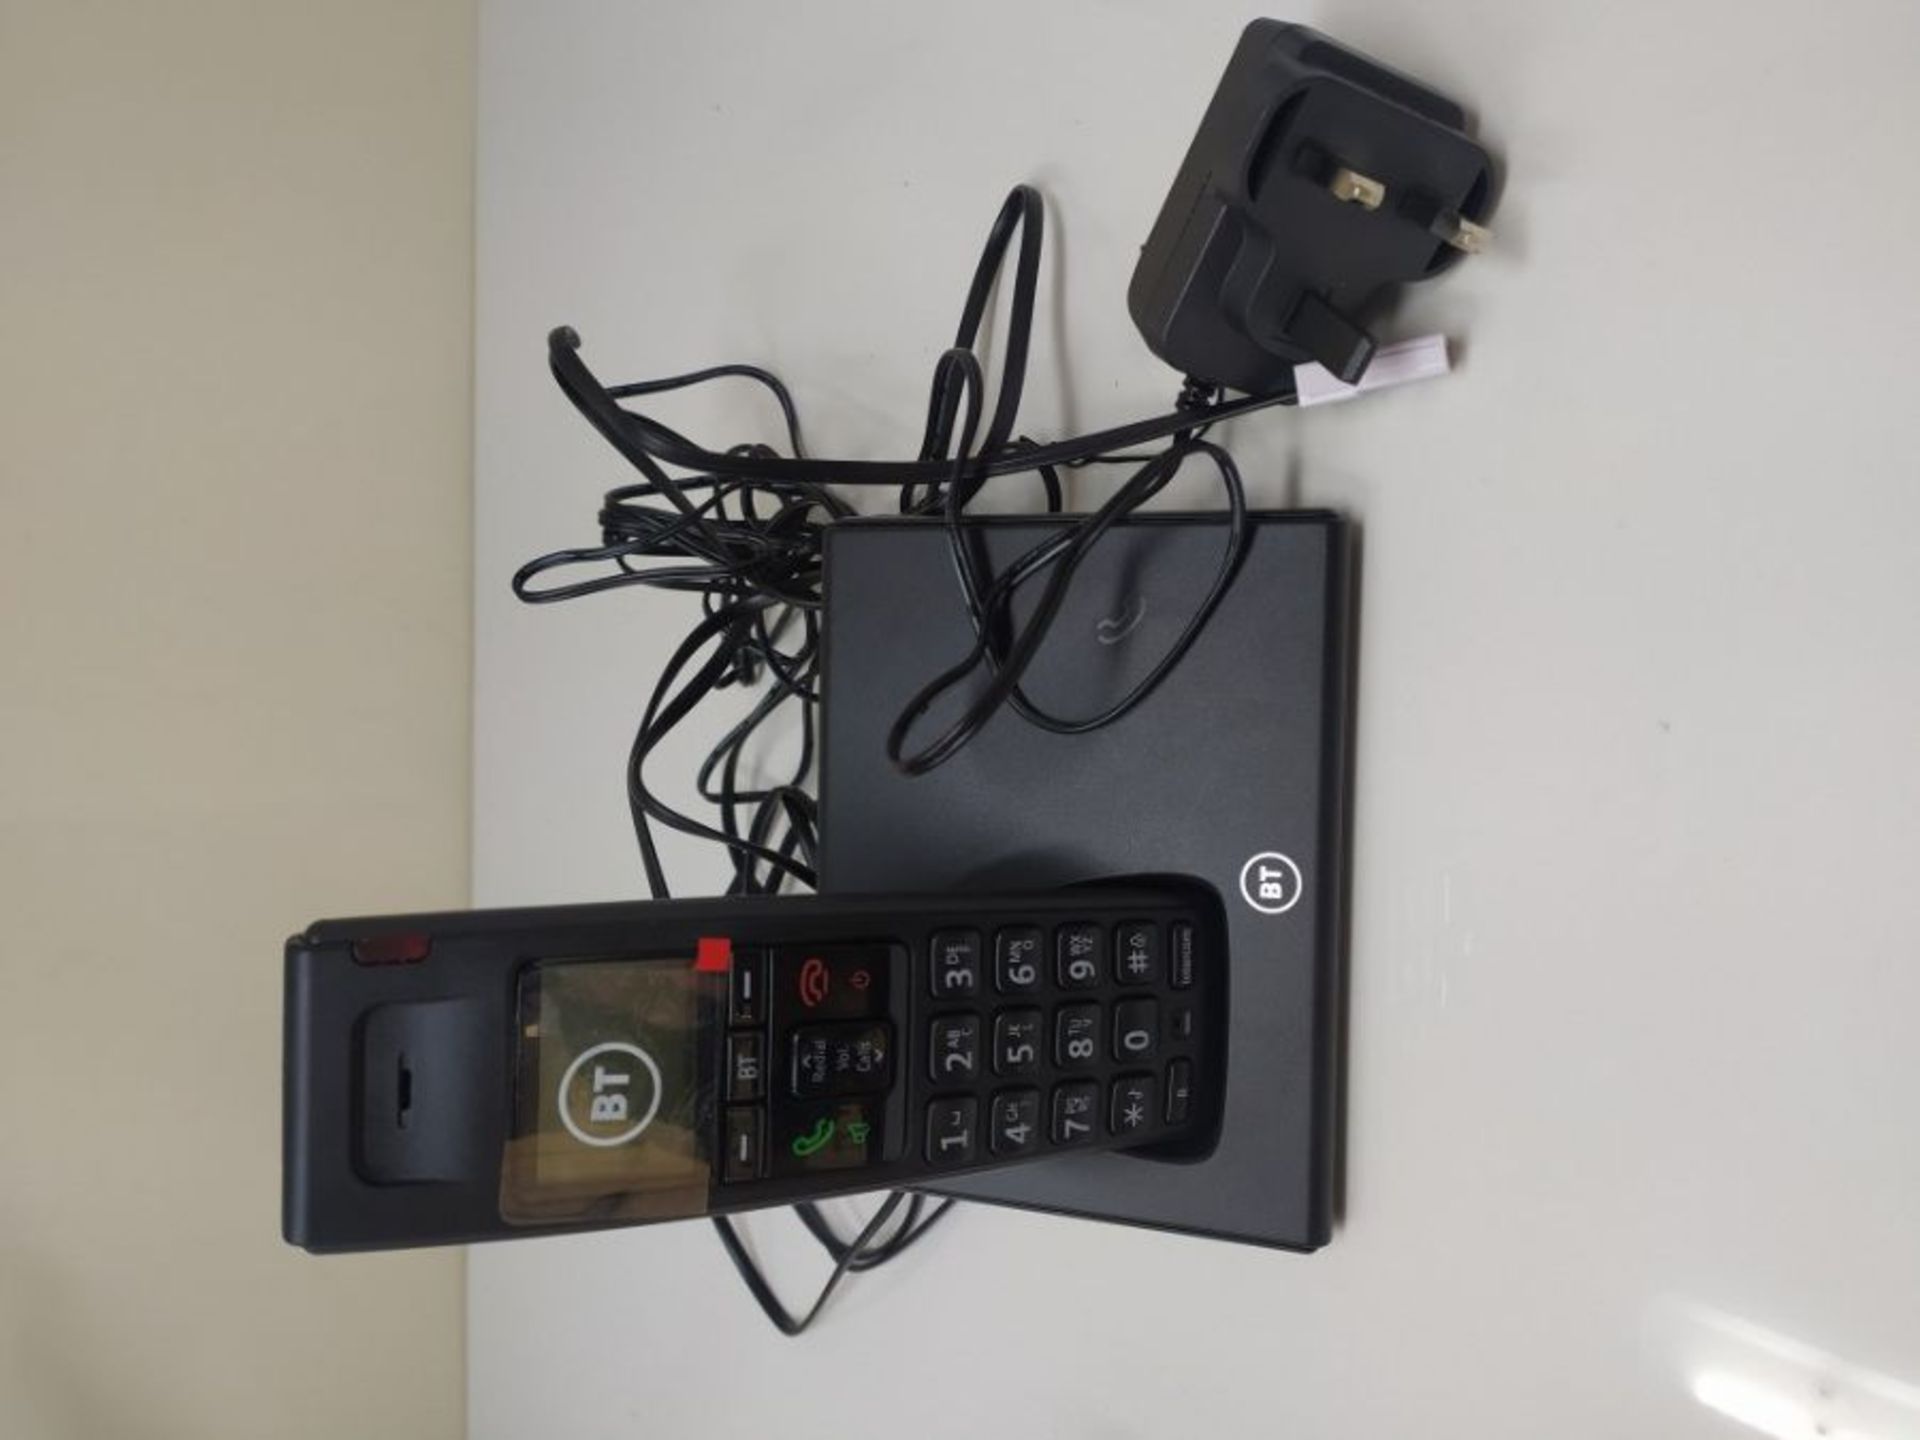 BT Diverse 7110 Plus Single DECT Phone, Black - Image 2 of 2